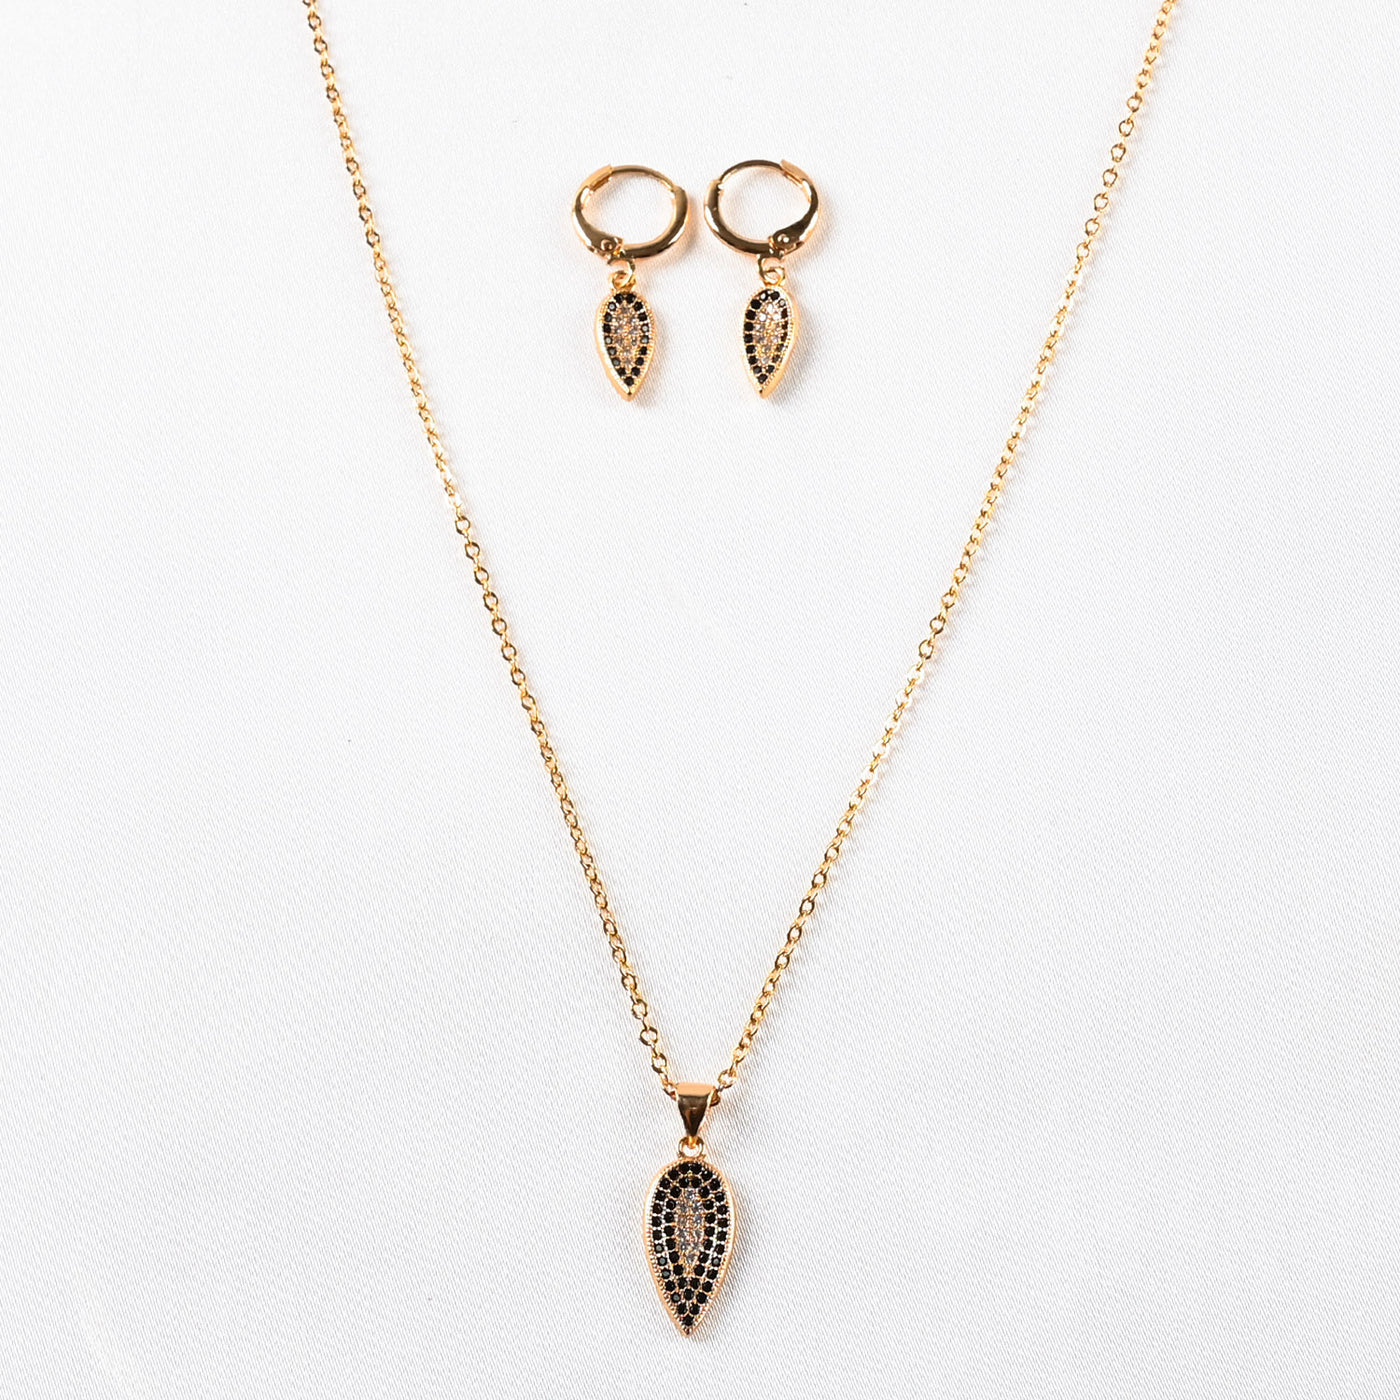 Earrings & Necklace Jewelry Set